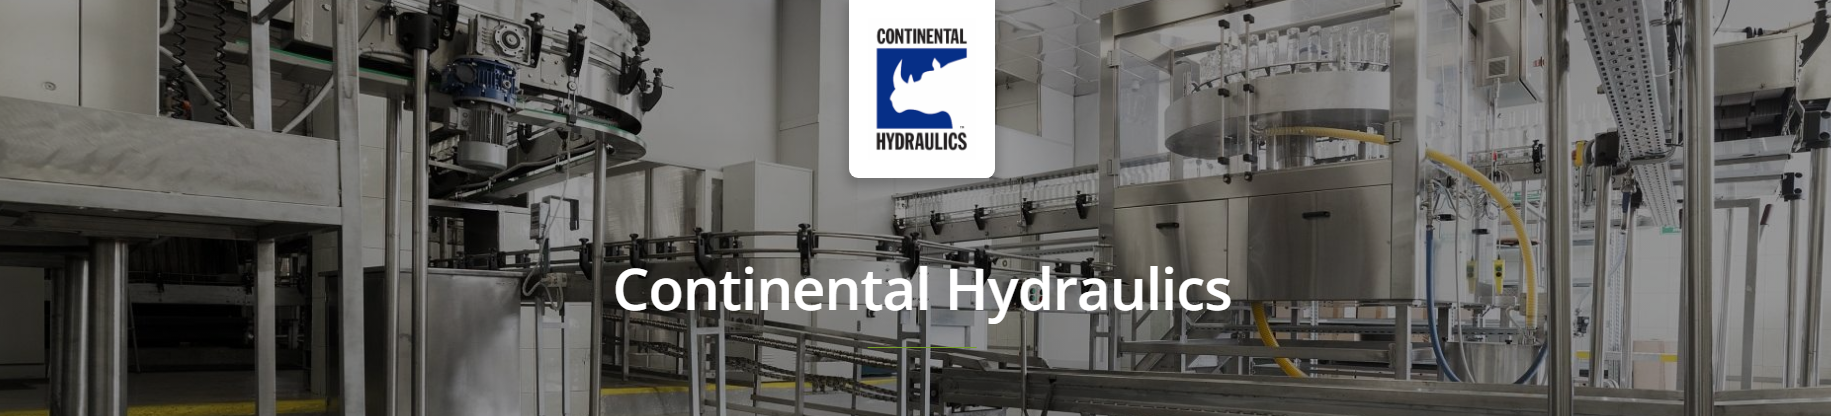 Continental Hydraulics Pumps